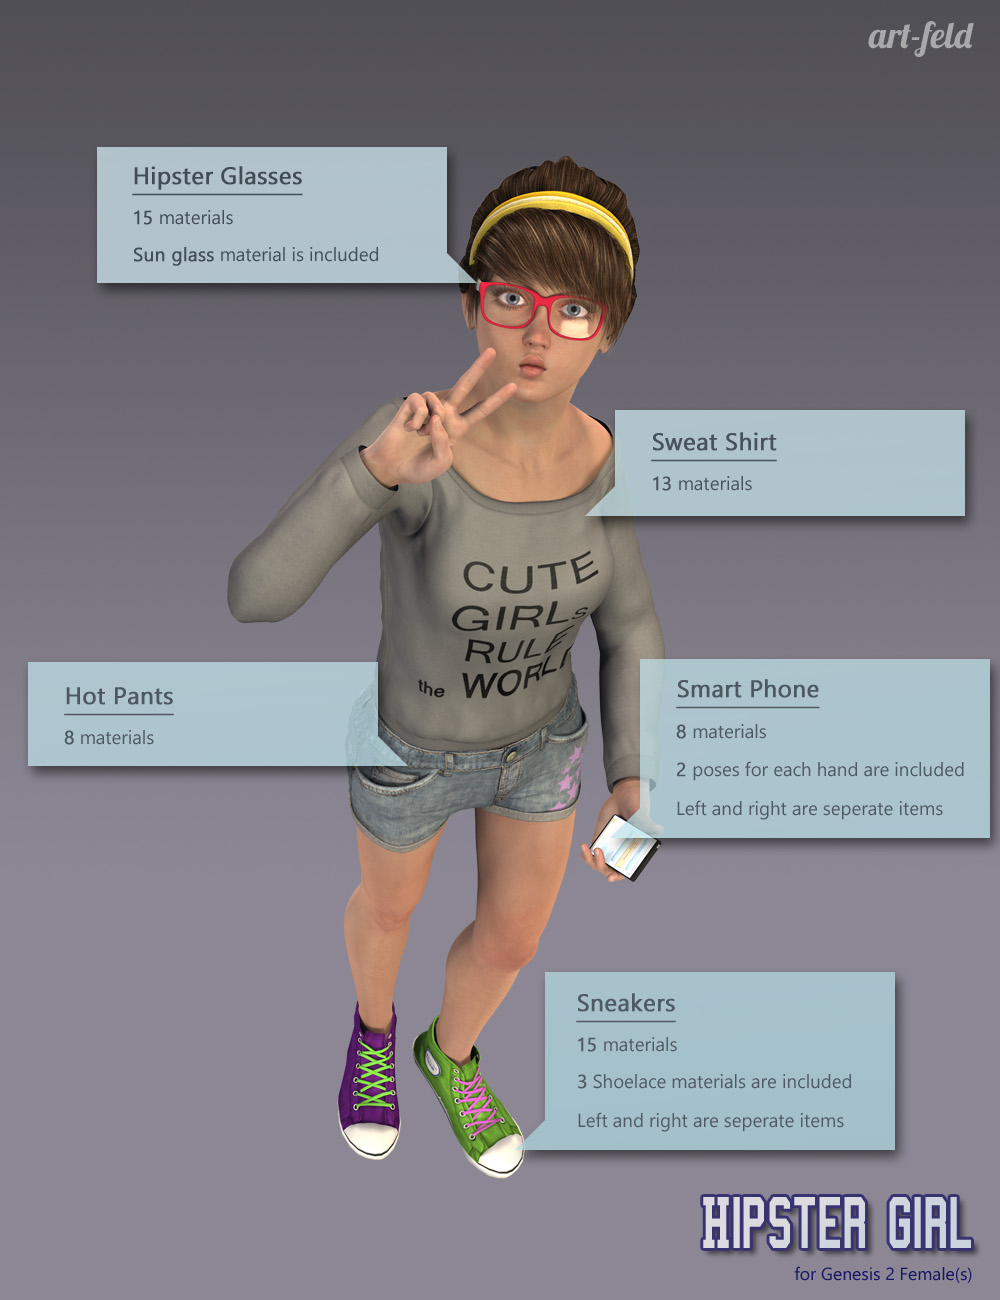 Hipster Girl for Genesis 2 Female(s) by: art-feld, 3D Models by Daz 3D